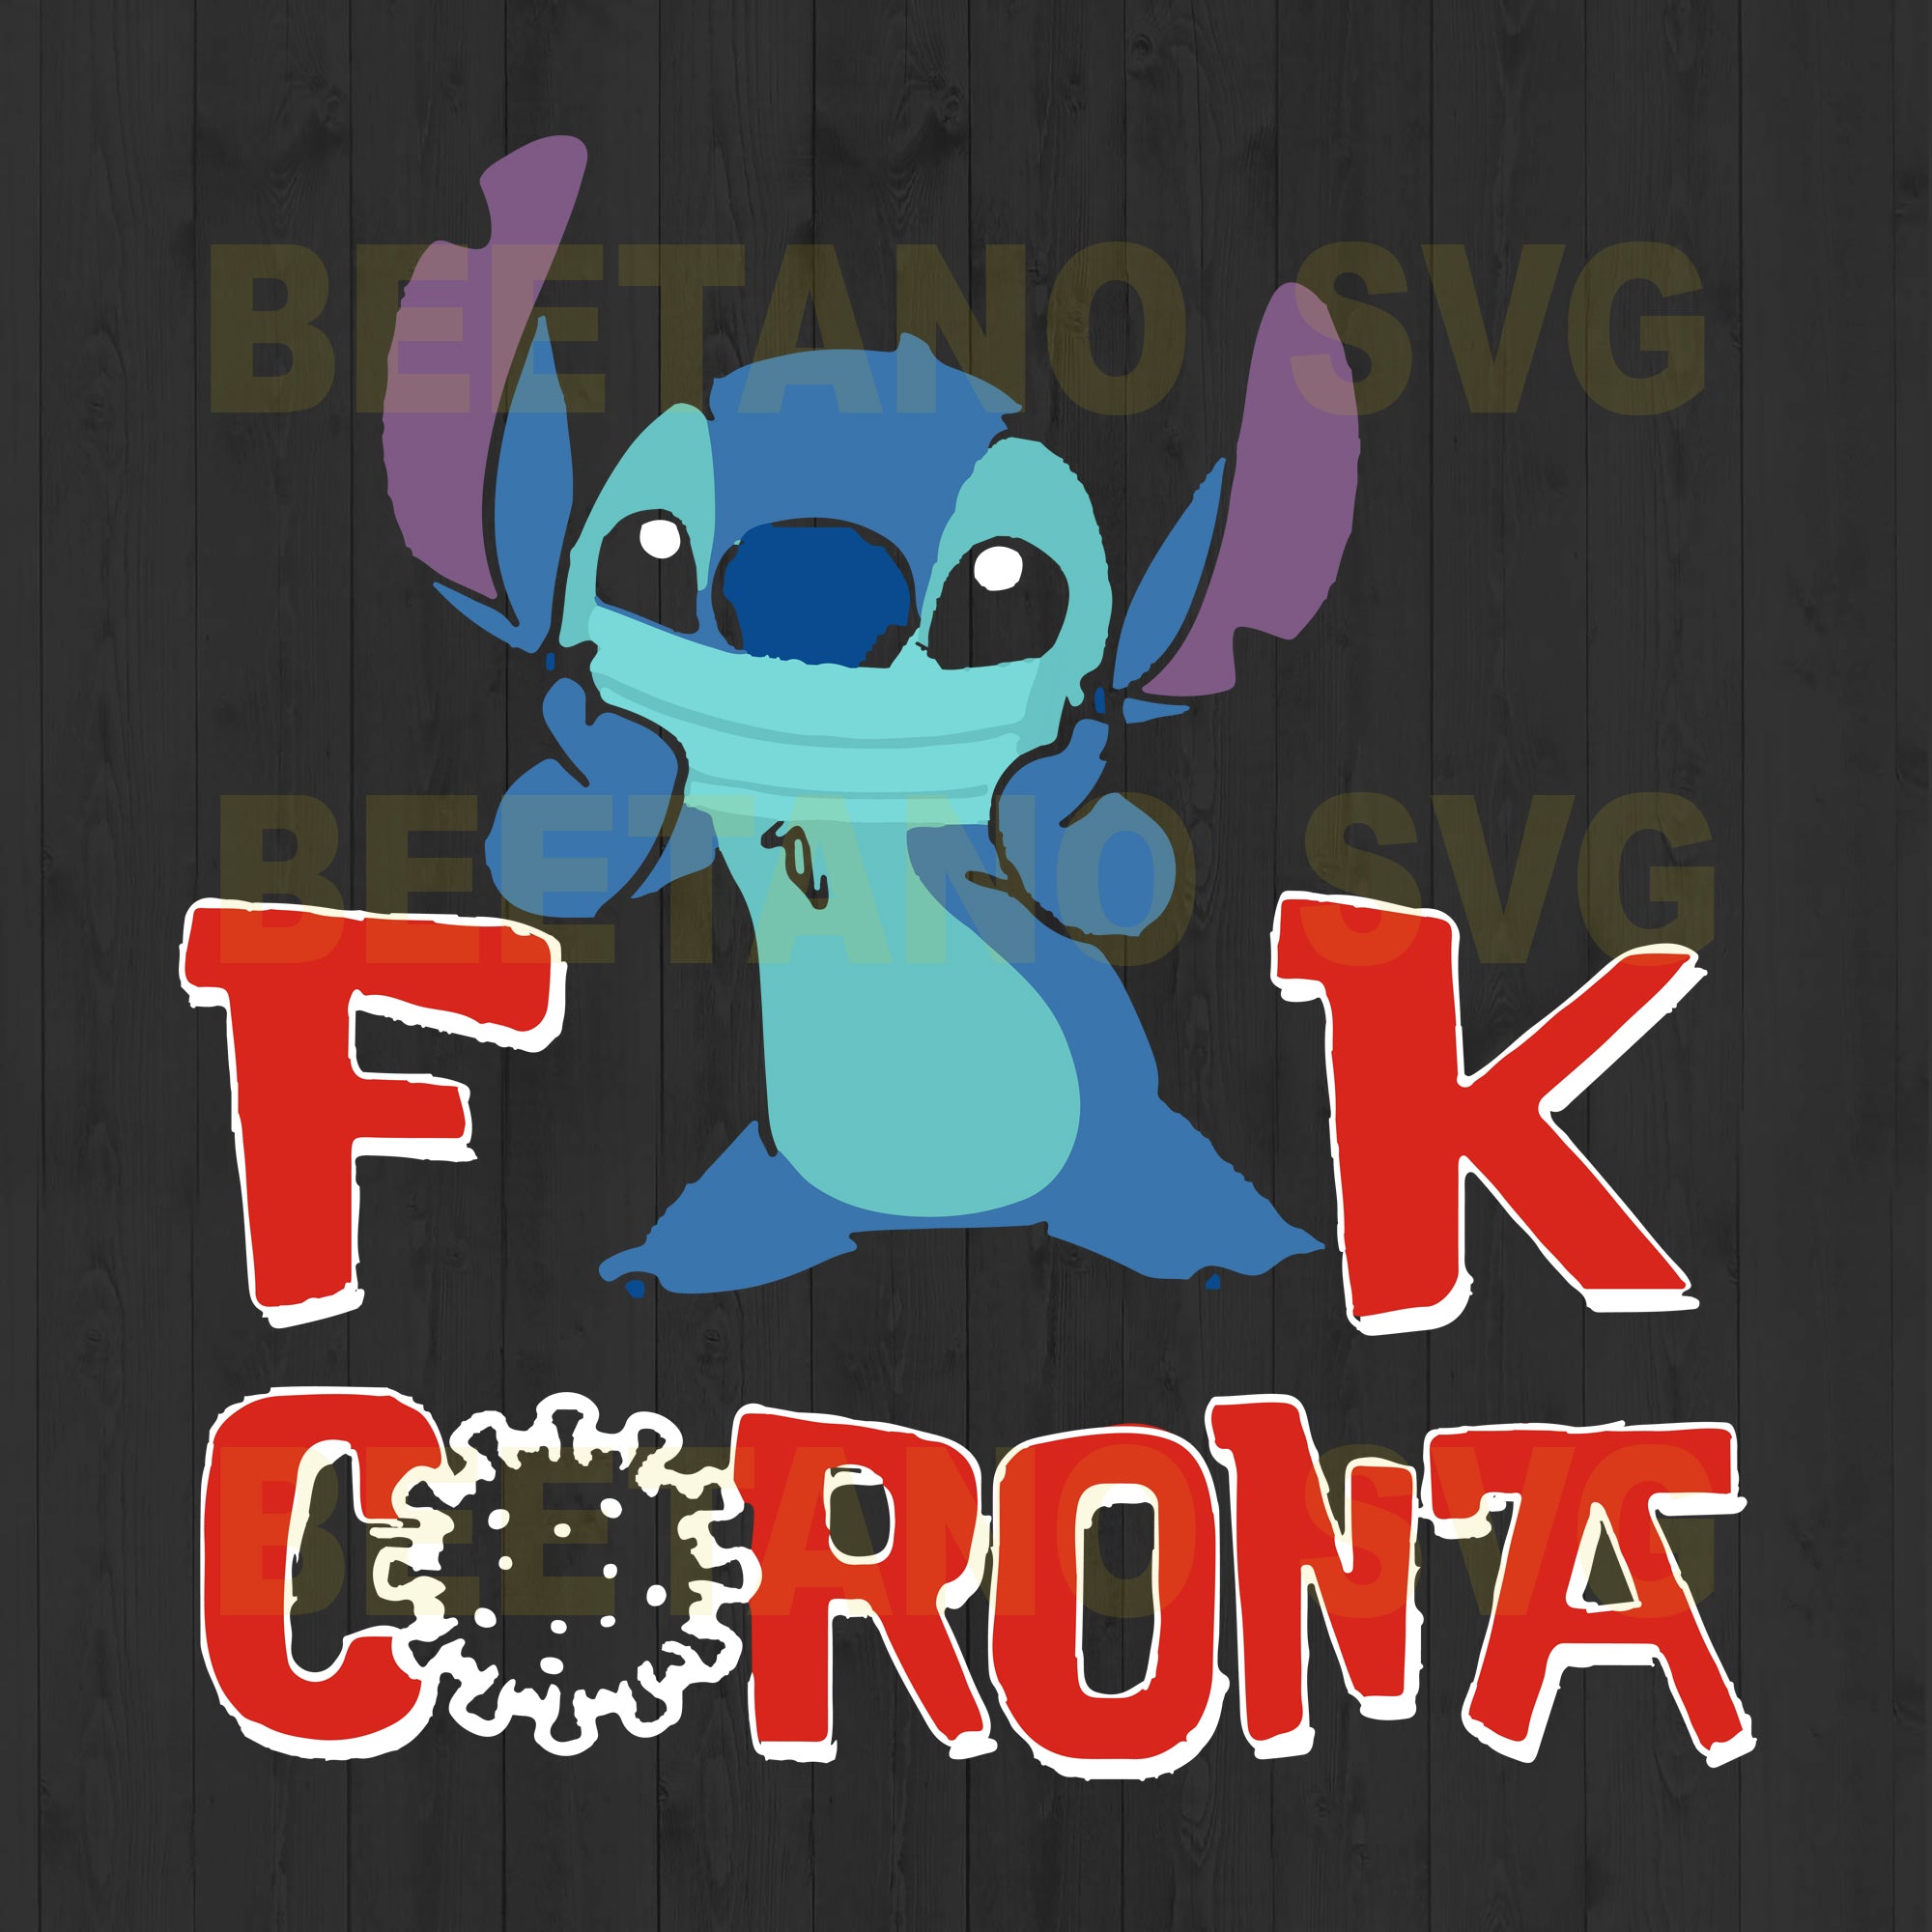 Download Lilo And Stitch Fuck Corona Svg Files Lilo And Stitch Svg Fuck Coron Beetanosvg Scalable Vector Graphics